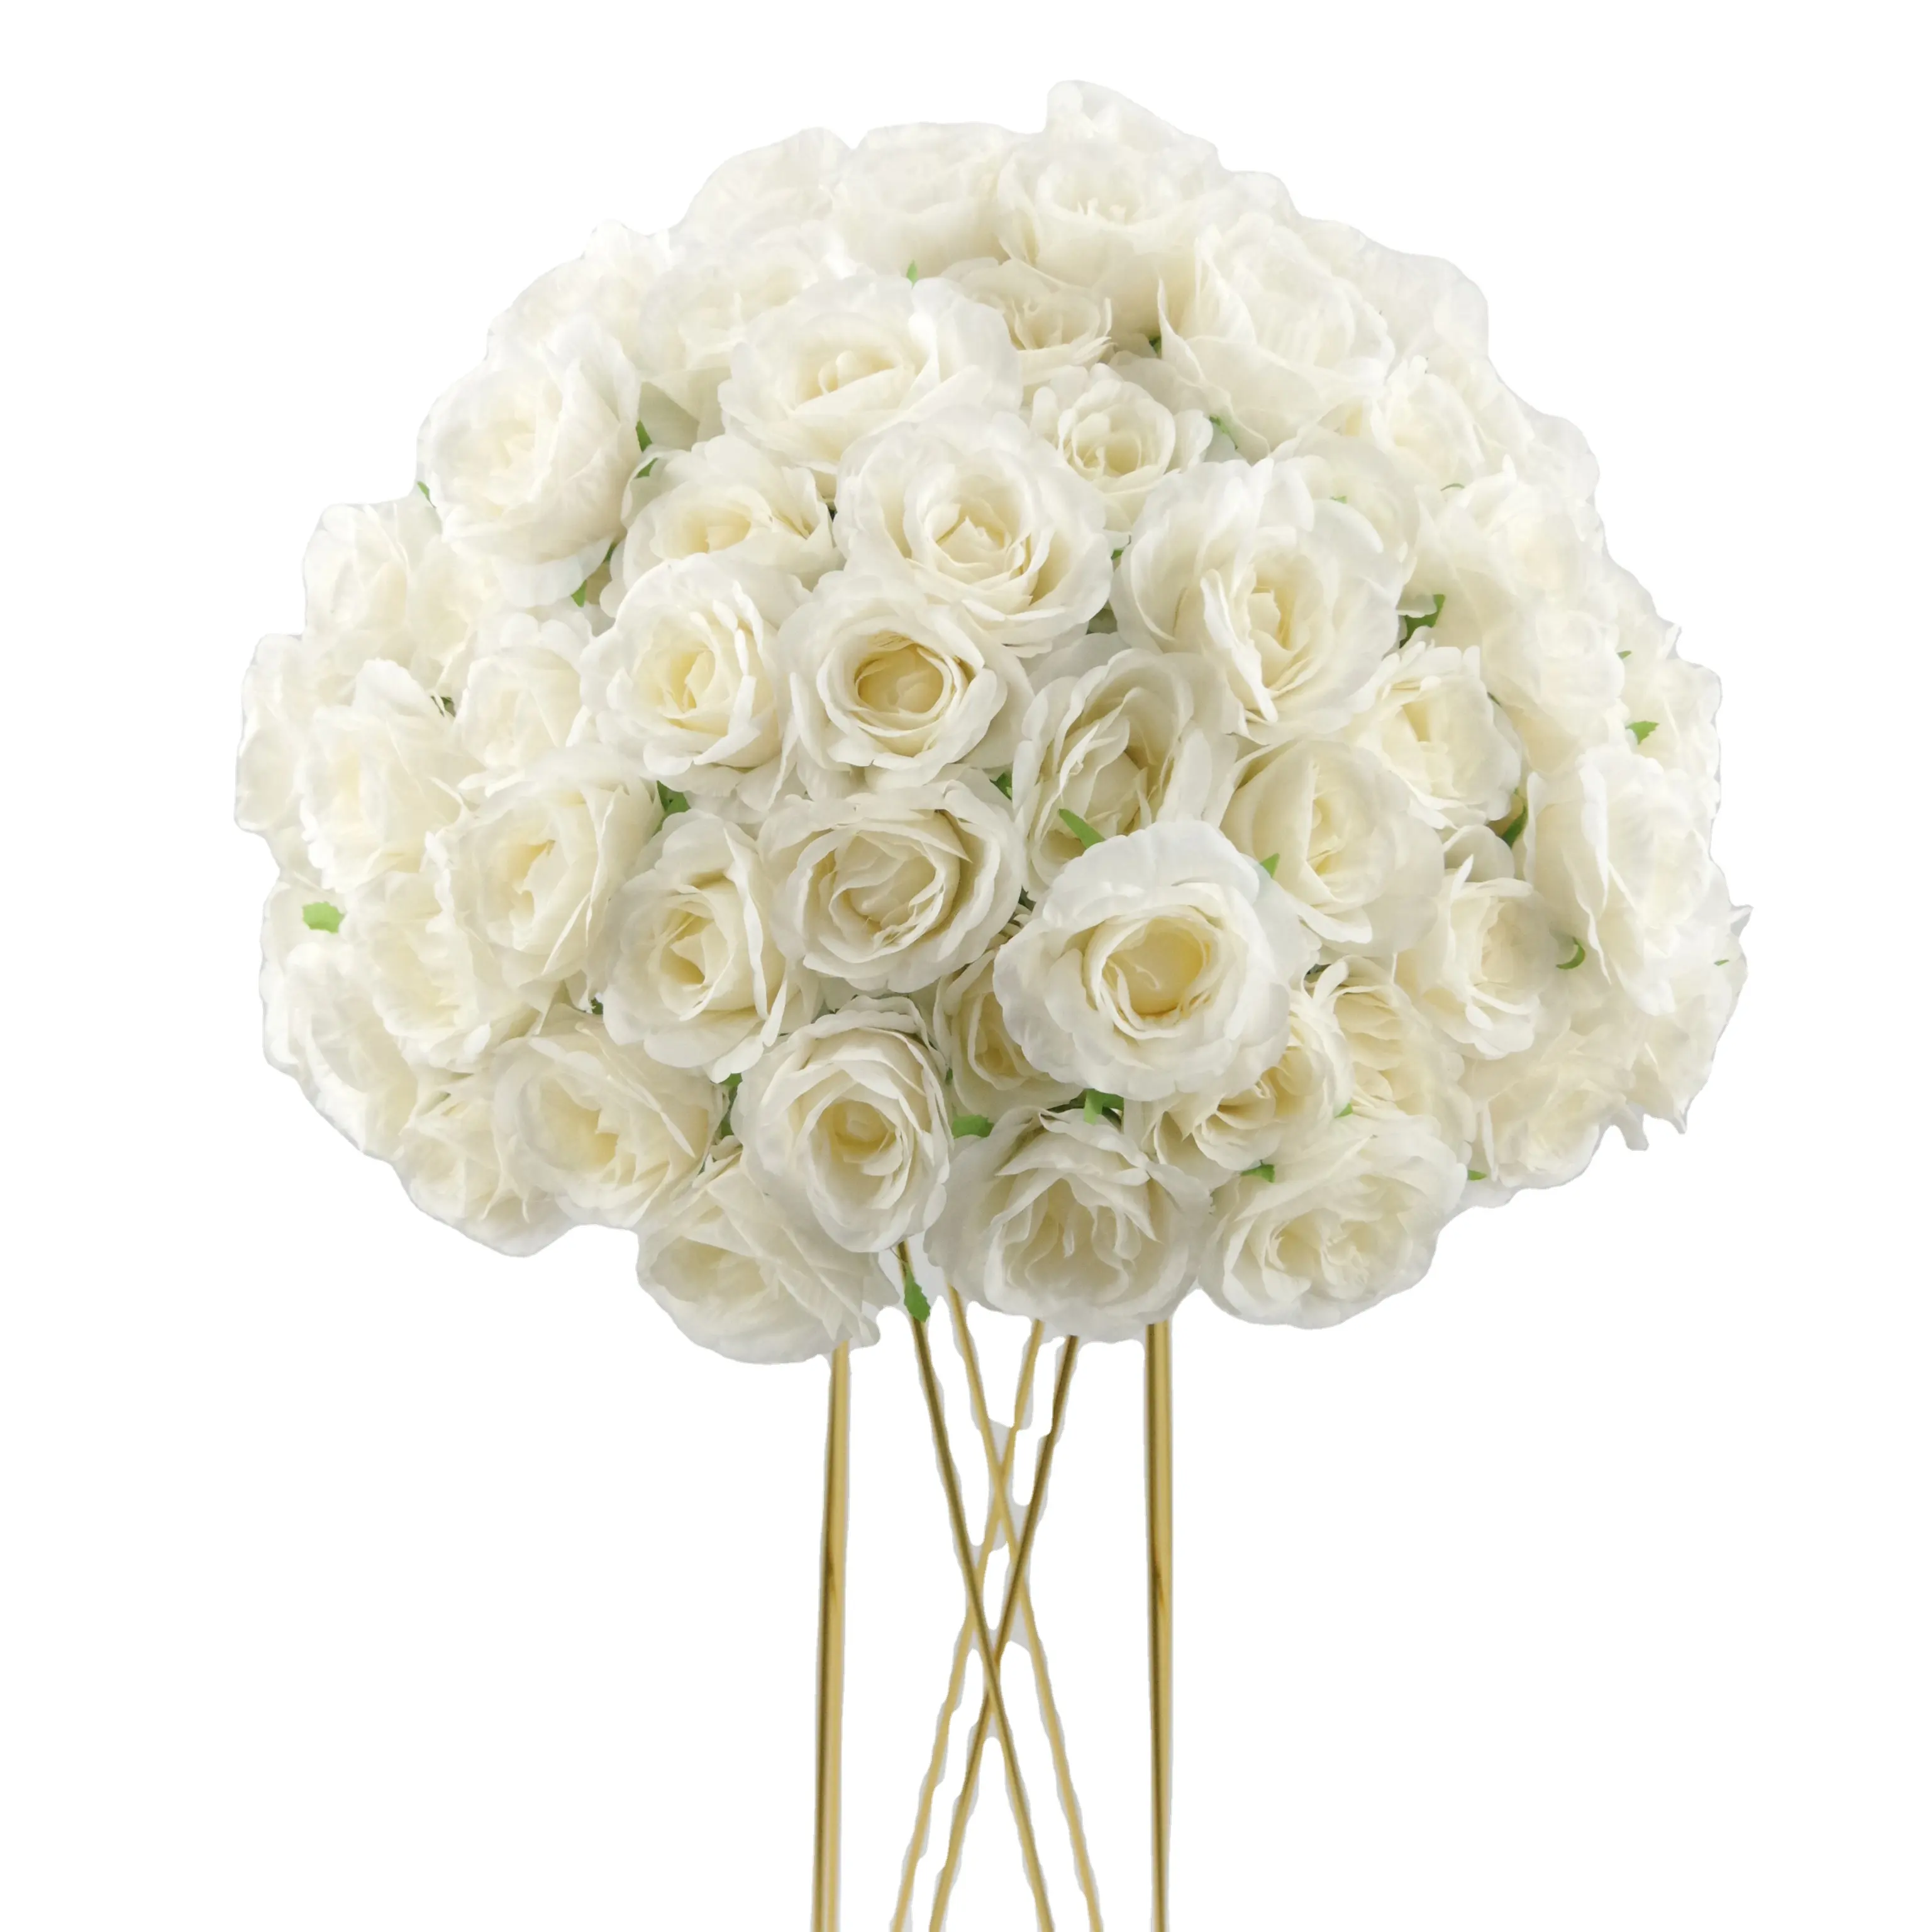 인공 도매 꽃 공 웨딩 테이블 중심 파티 장식 꽃 손으로 만든 실크 OEM 사용자 정의 50cm